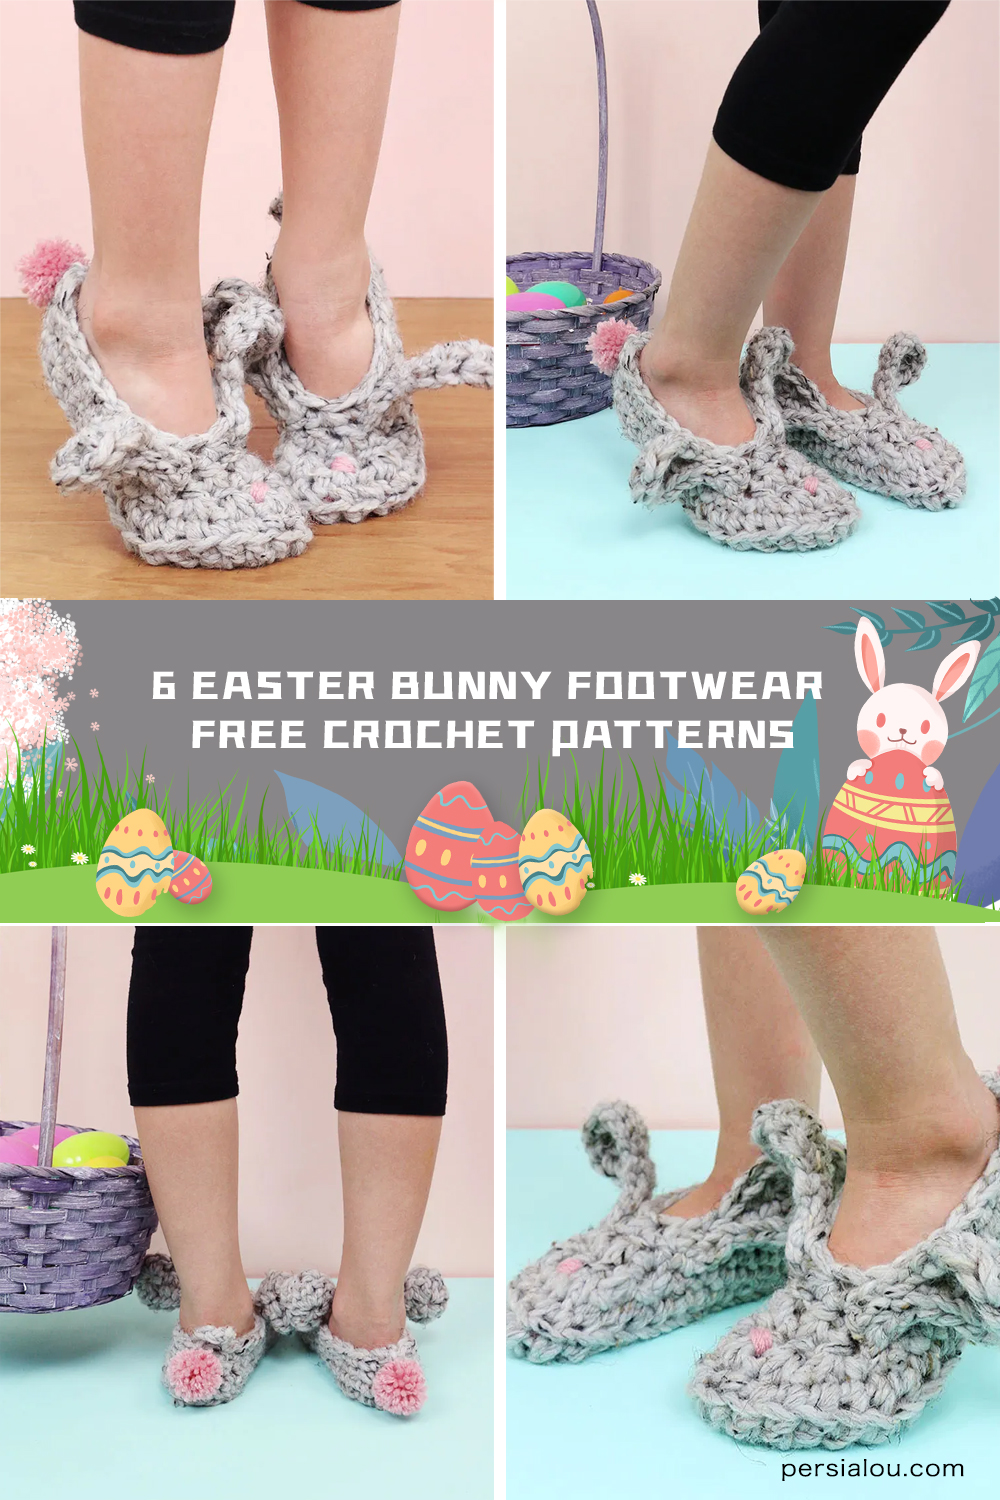 6 Easter Bunny Footwear FREE Crochet Patterns